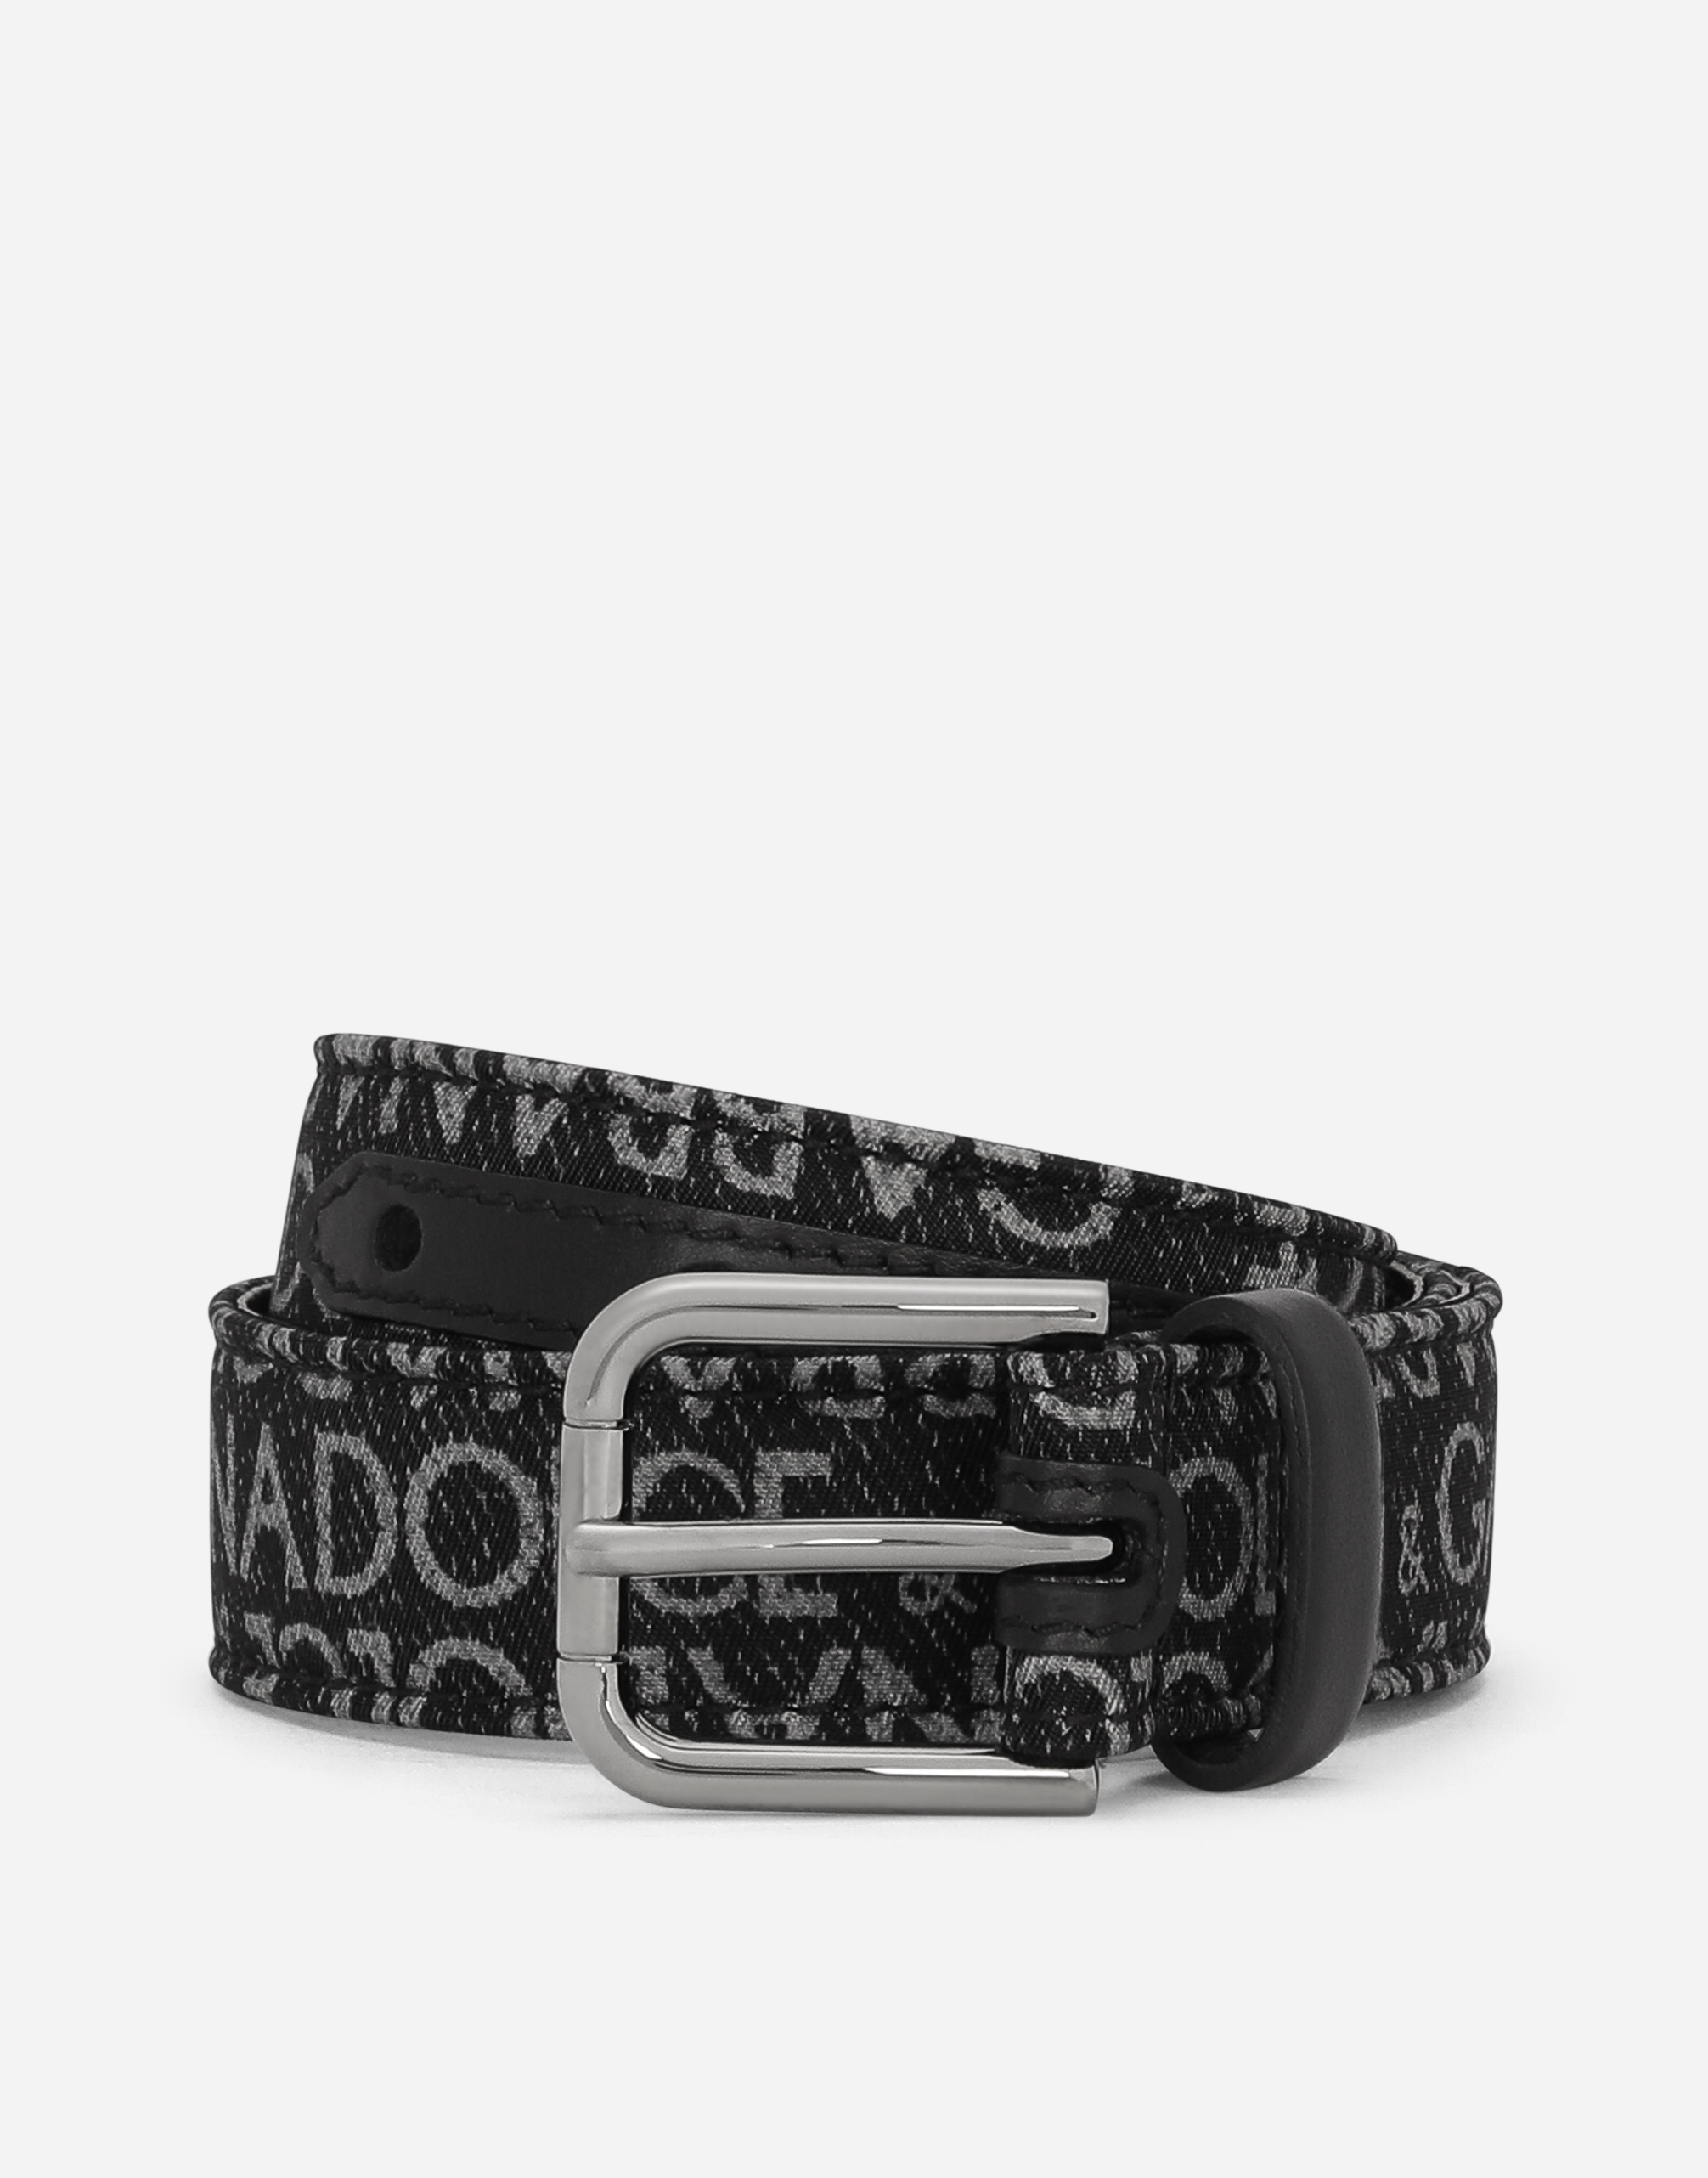 Dolce & Gabbana Kids' Printed Nylon Belt In Black